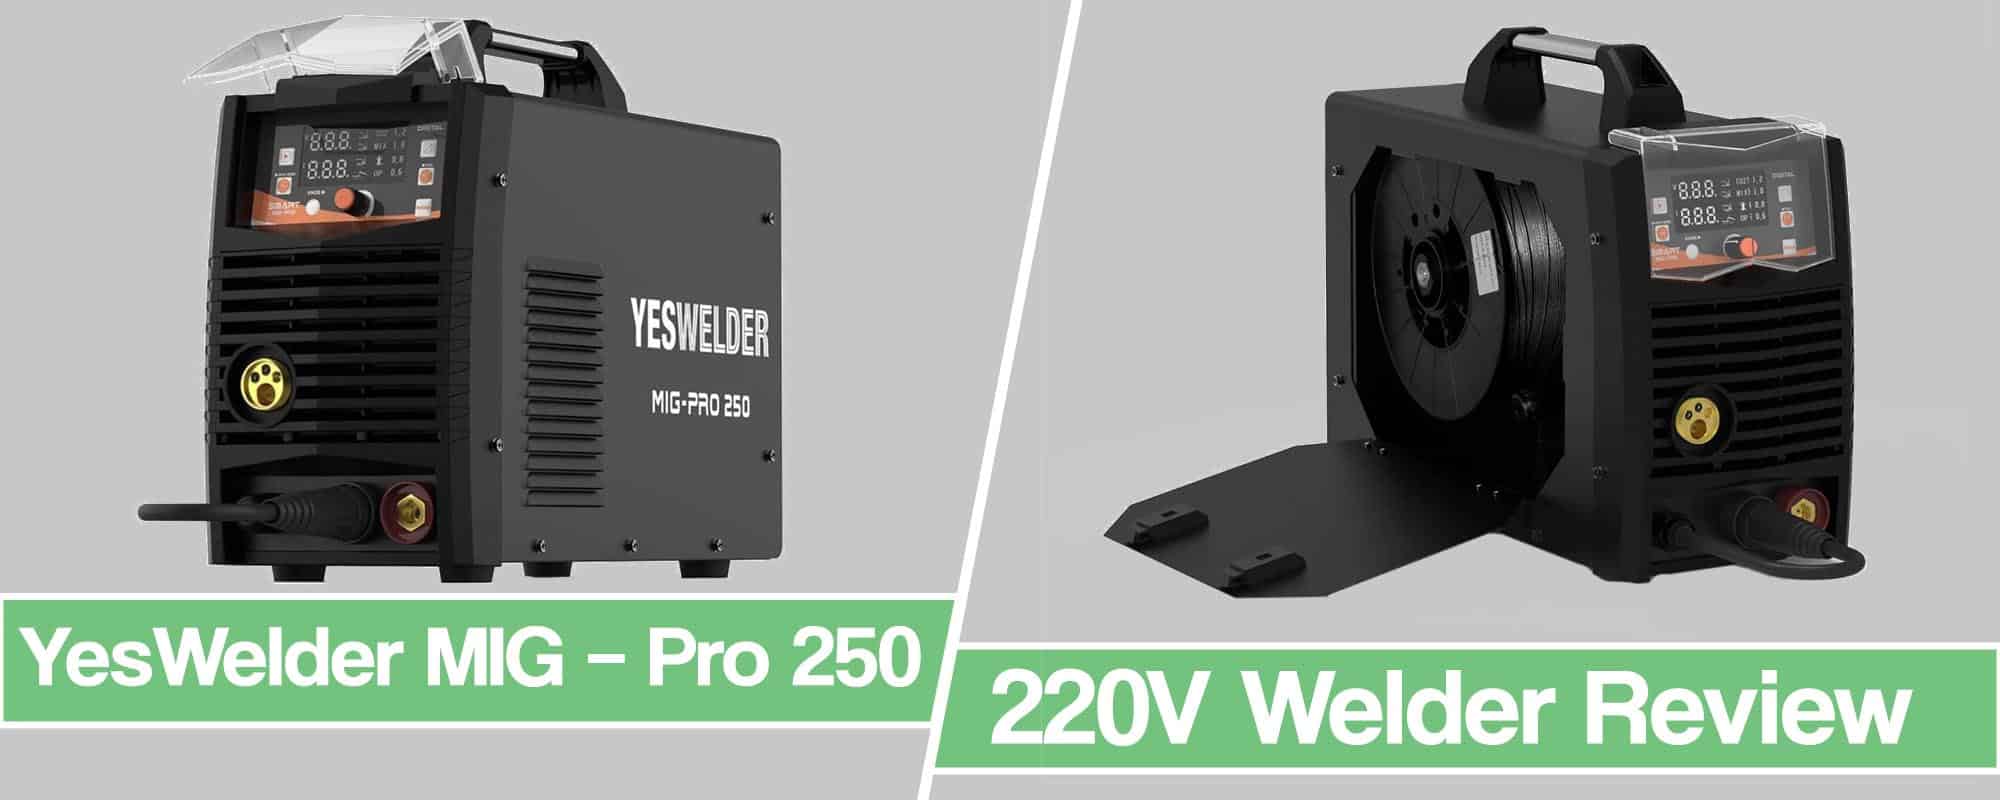 YesWelder MIG – Pro 250A Welder Review 220V MIG/TIG/Stick